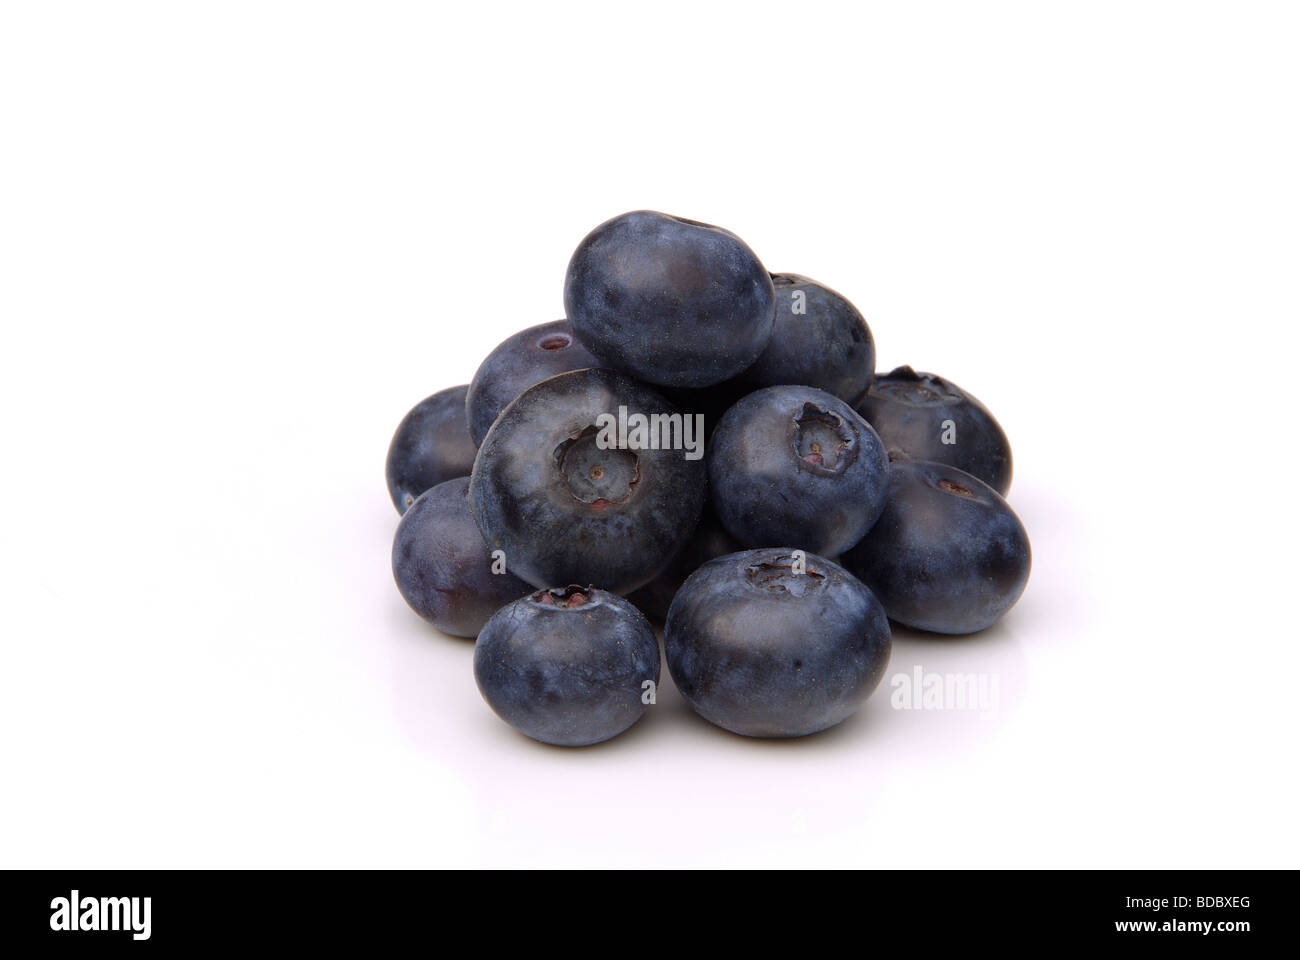 Heidelbeere blueberry 02 Stock Photo